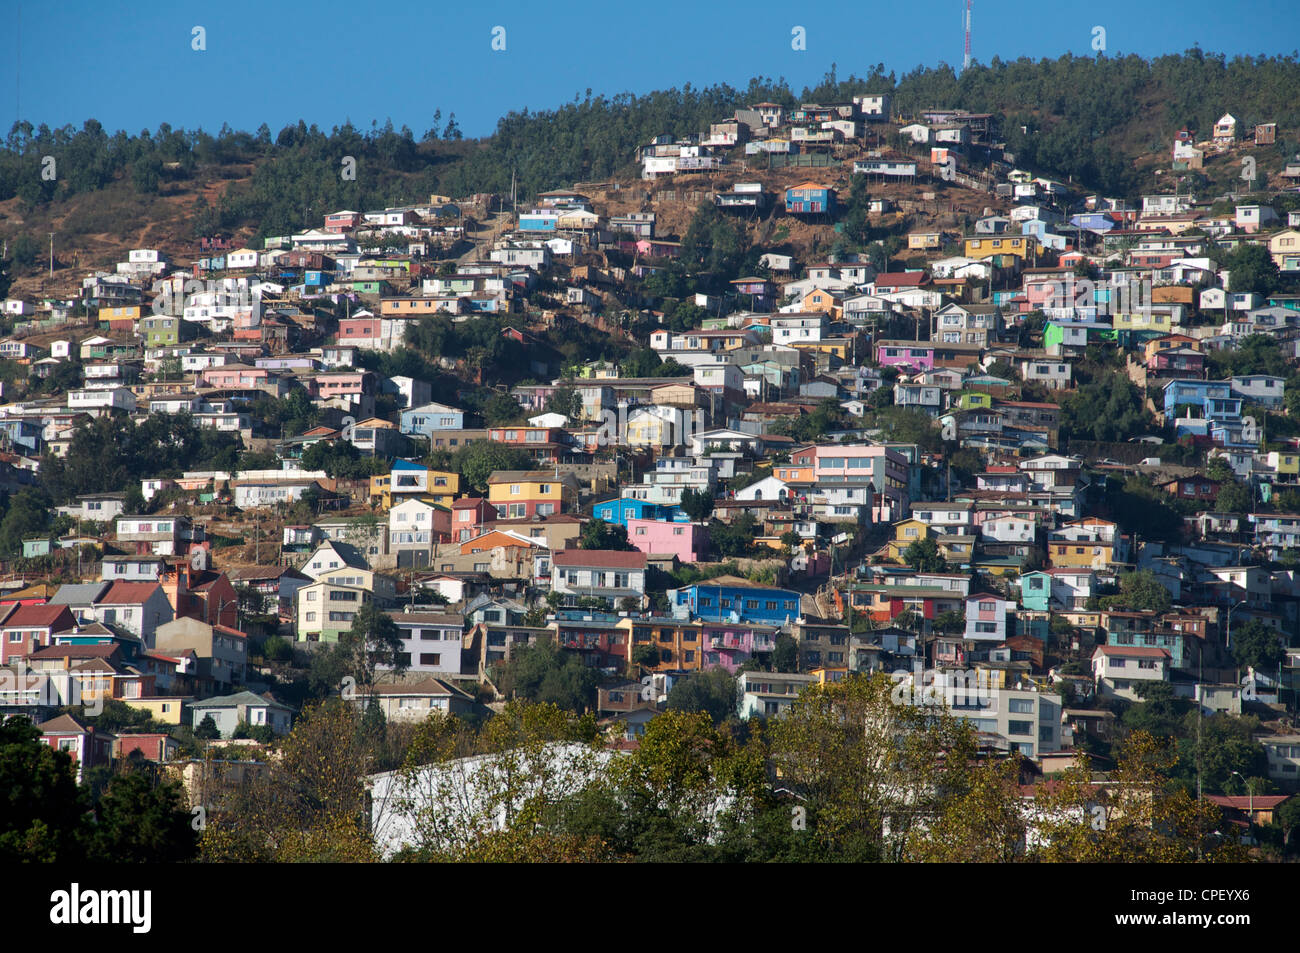 Panoramic view Valparaiso Chile Stock Photo